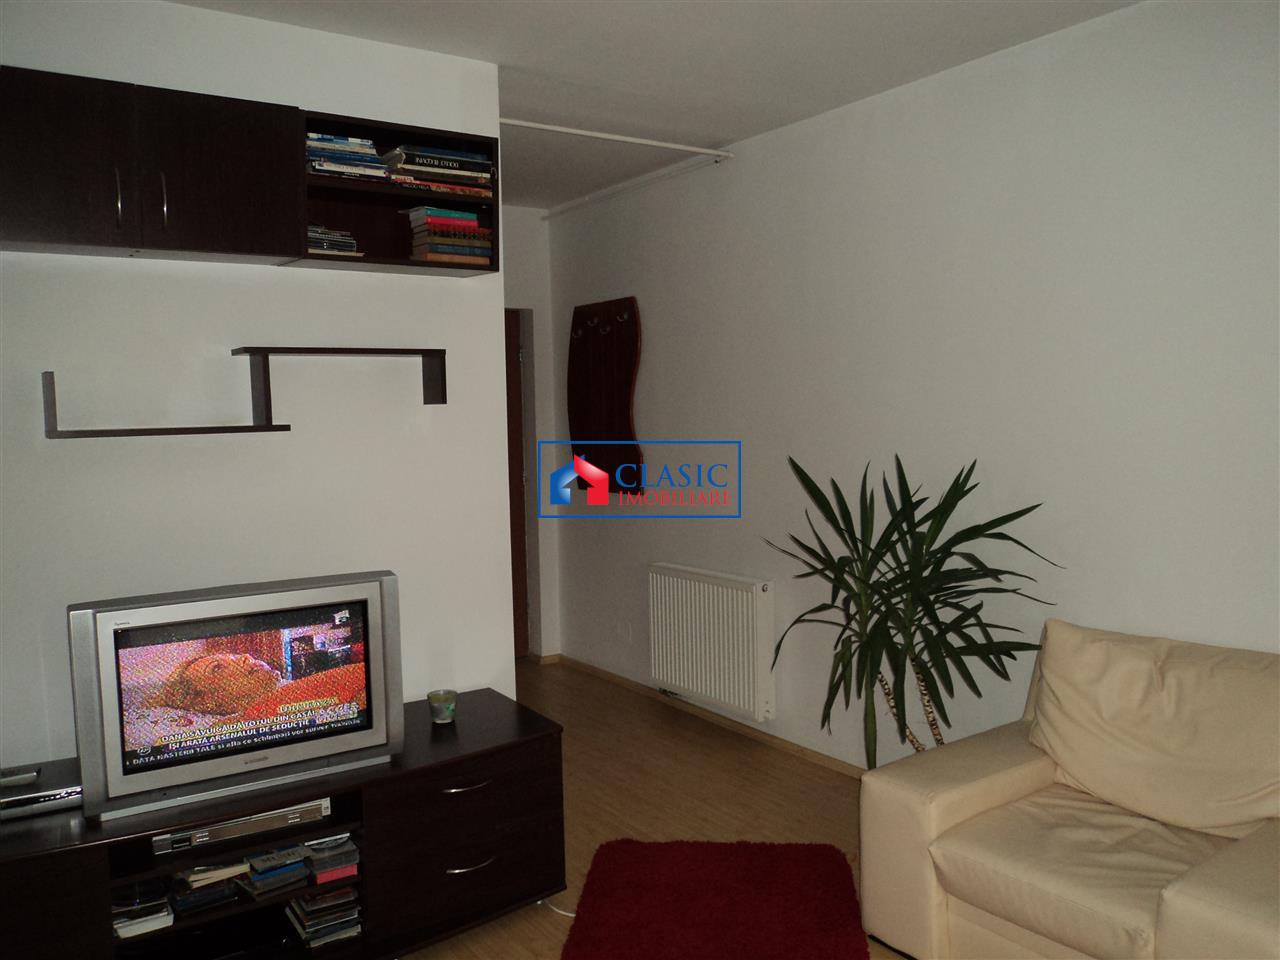 Inchiriere Apartament A.Muresanu, Cluj Napoca